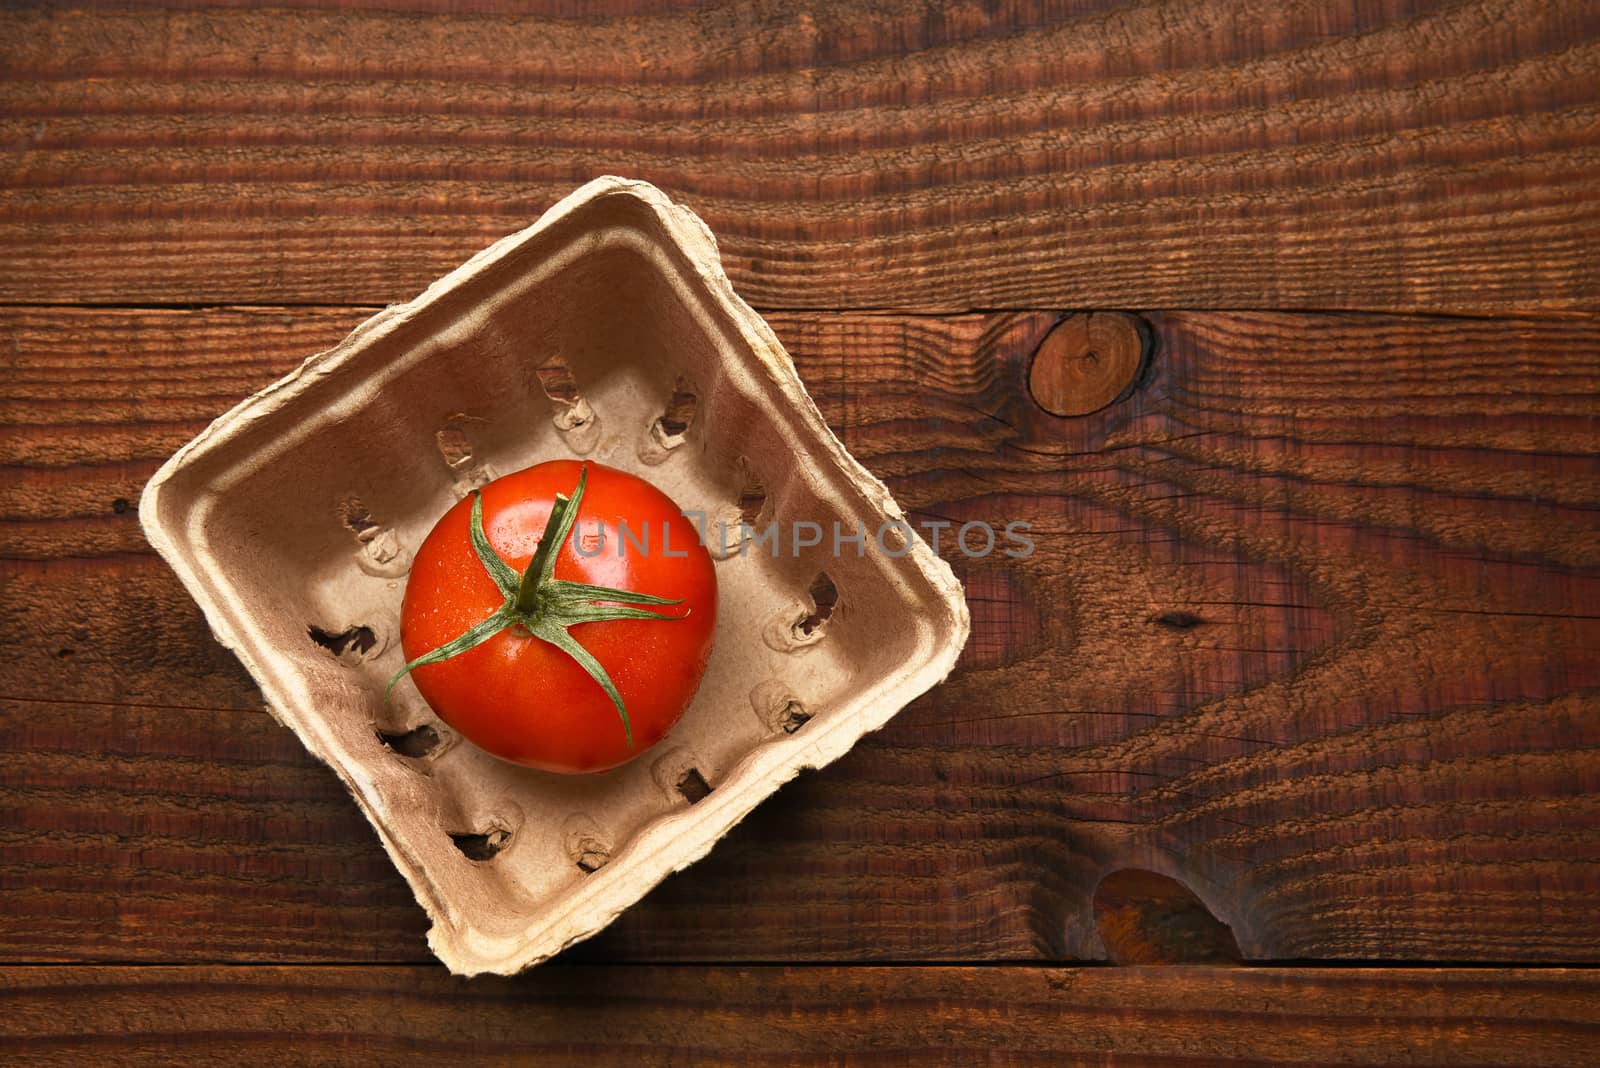 Single Tomato Produce Container by sCukrov